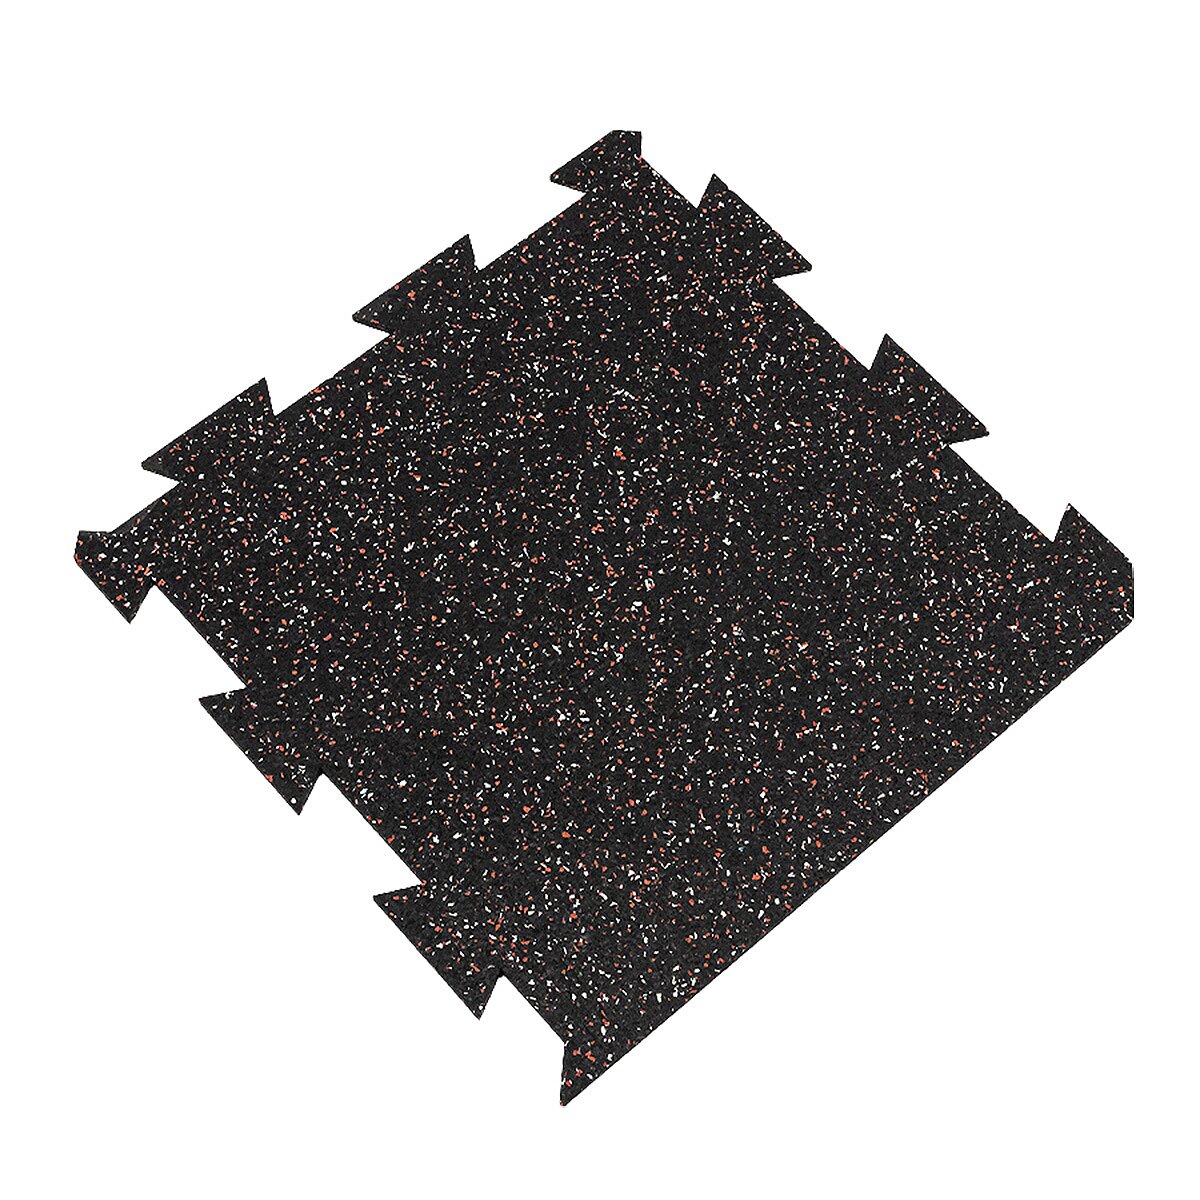 Čierno-bielo-červená podlahová guma (puzzle - okraj) FLOMA FitFlo SF1050 - dĺžka 50 cm, šírka 50 cm, výška 0,8 cm